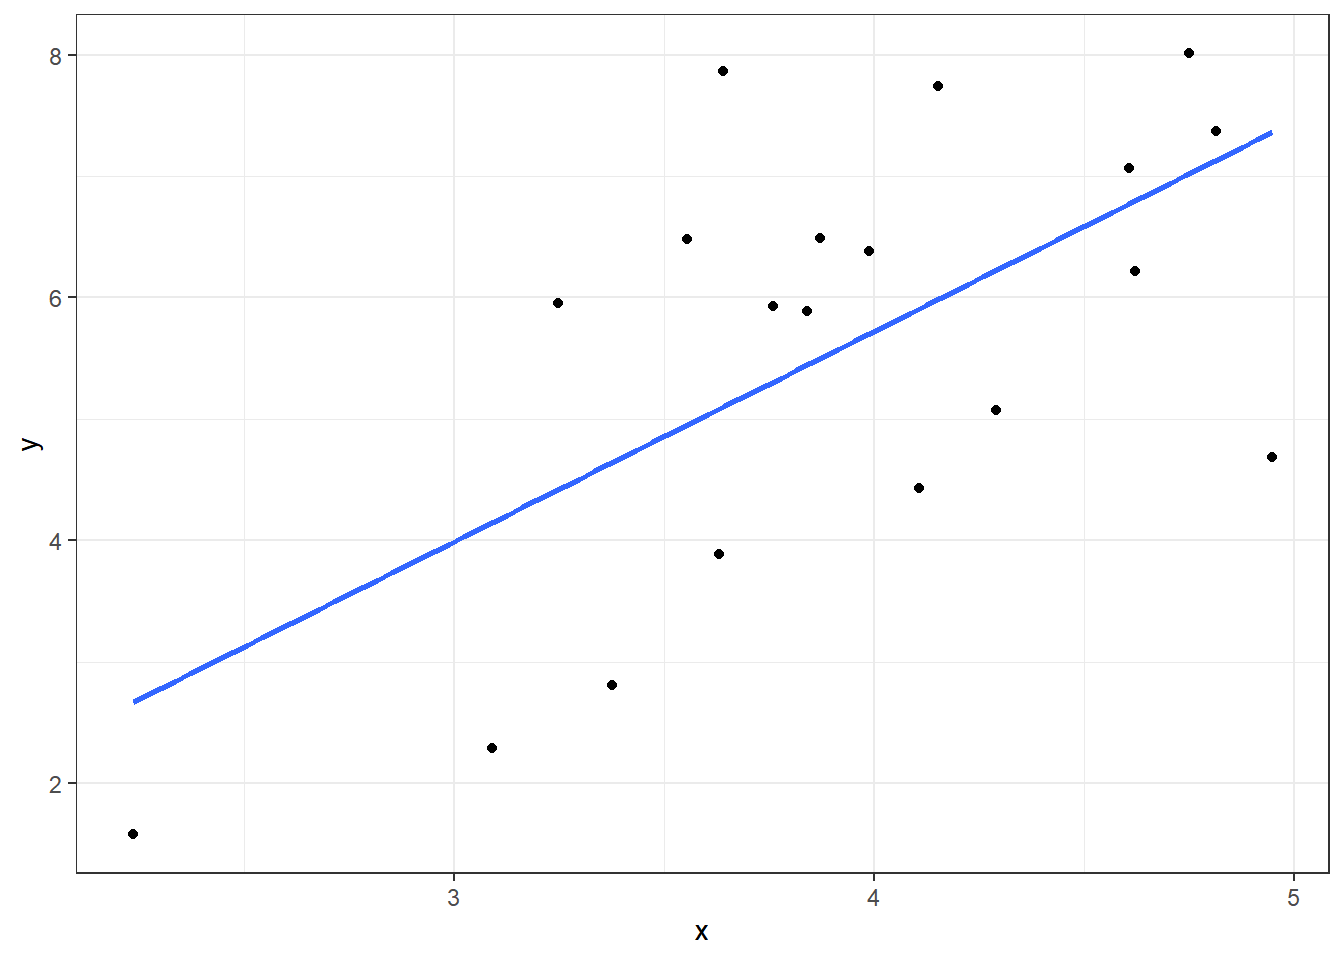 Garis Regresi Penjualan Motor (y) sebagai Fungsi dari Pendapatan per Kapita (x)